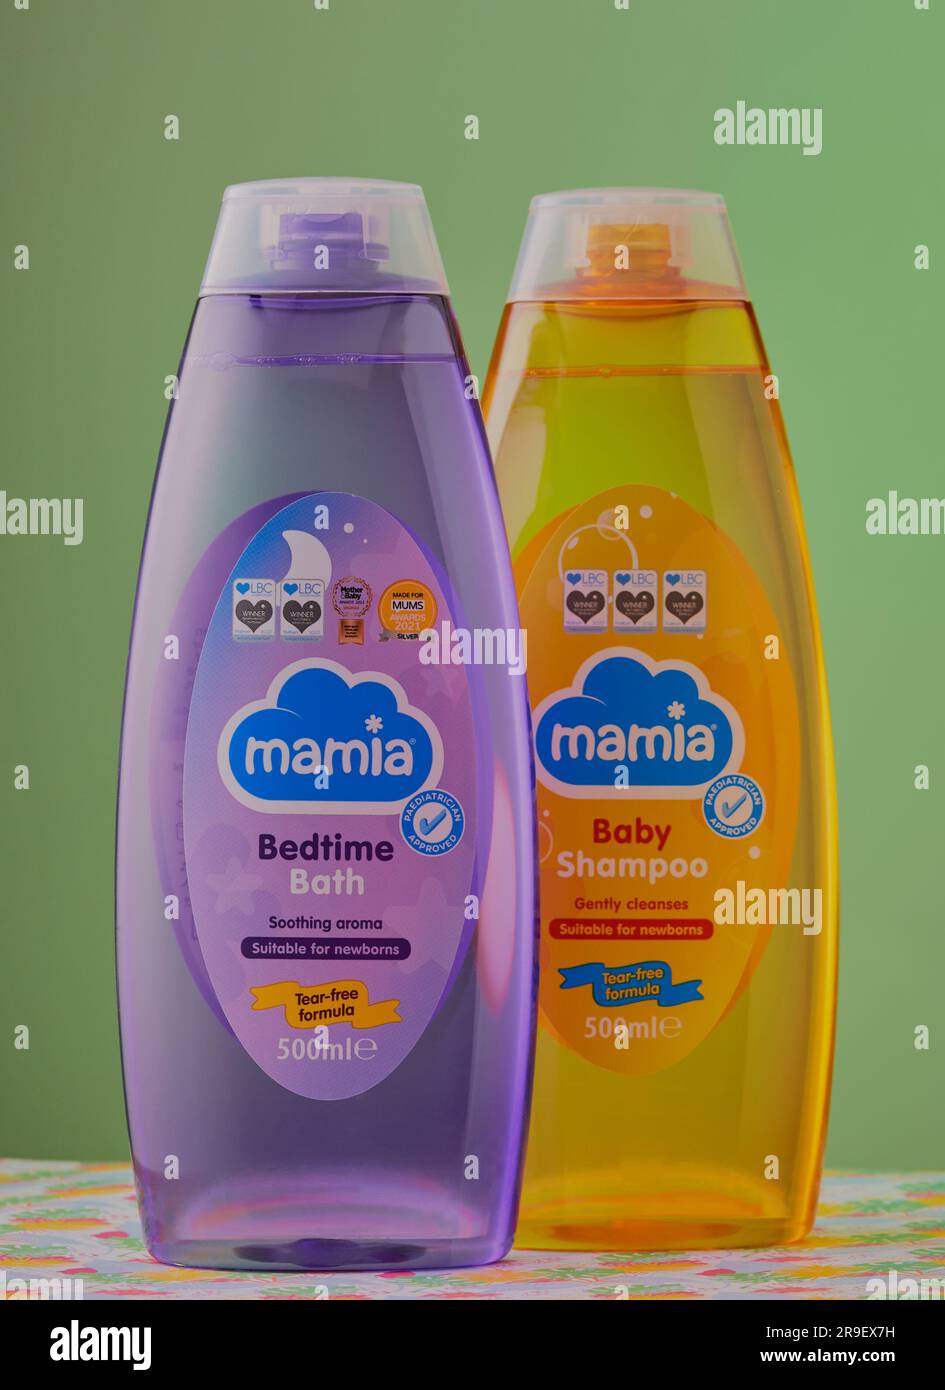 Mansfield, Nottingham, Regno Unito: Immagine del prodotto Studio dei prodotti per bambini Mamai, Mamai è un marchio di prodotti per bambini di proprietà di Aldis. Foto Stock